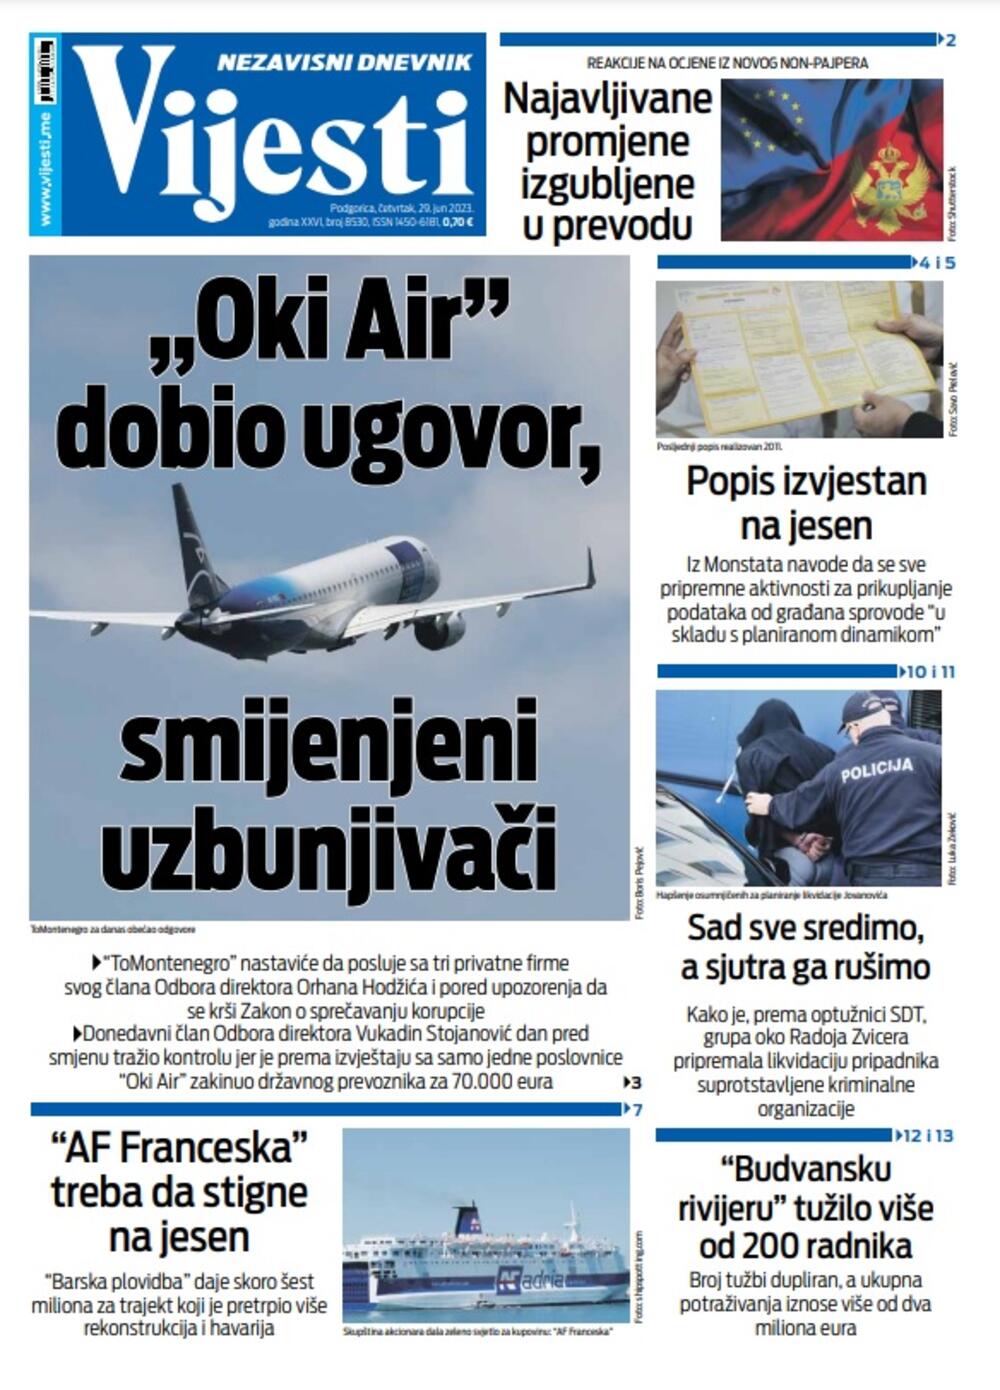 Naslovna strana "Vijesti" za 29. jun 2023., Foto: Vijesti